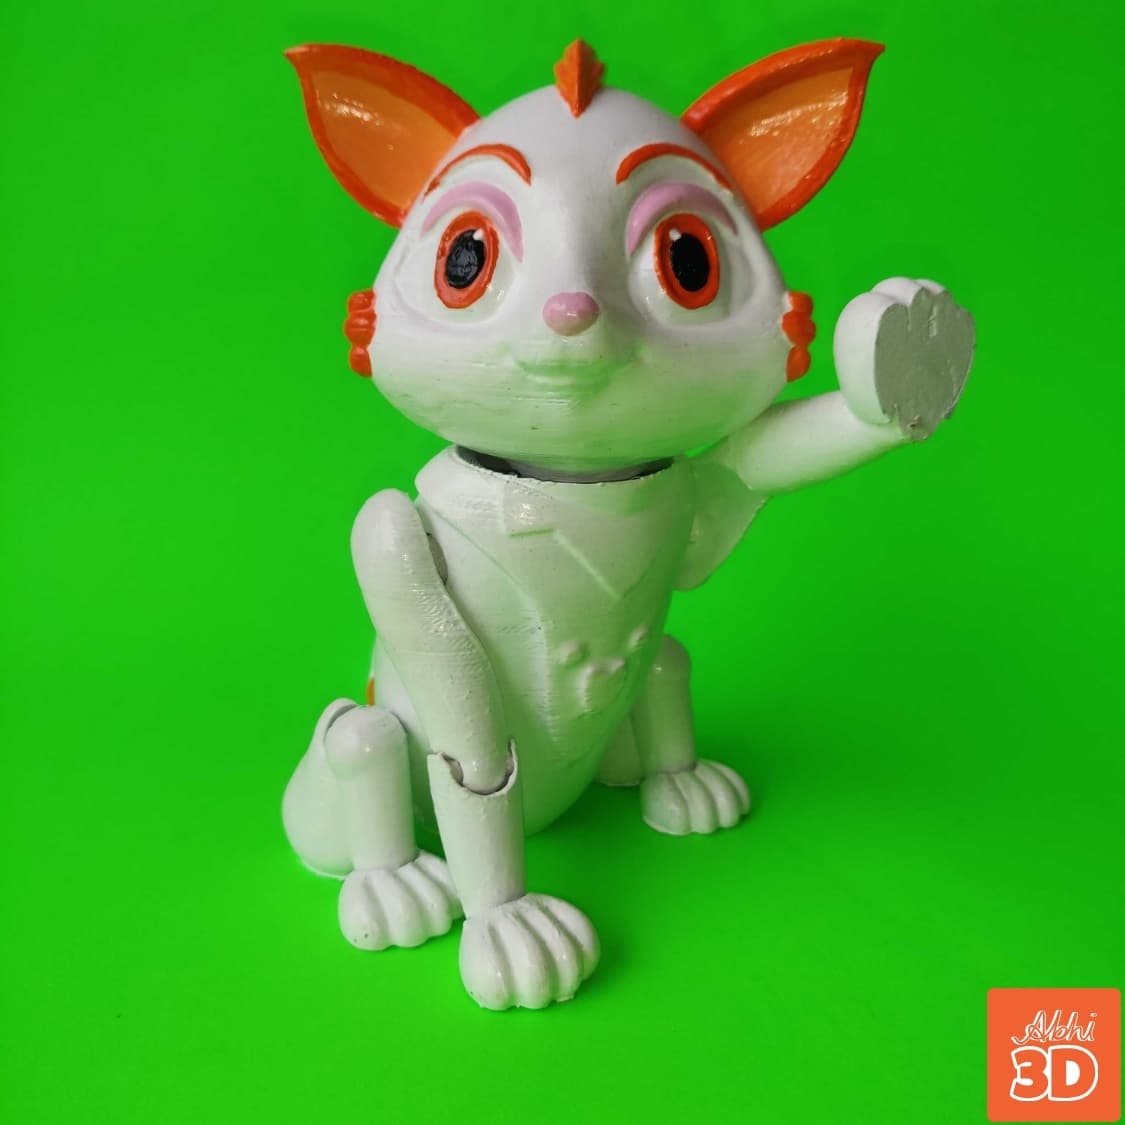 Cat STL File For 3D Printing